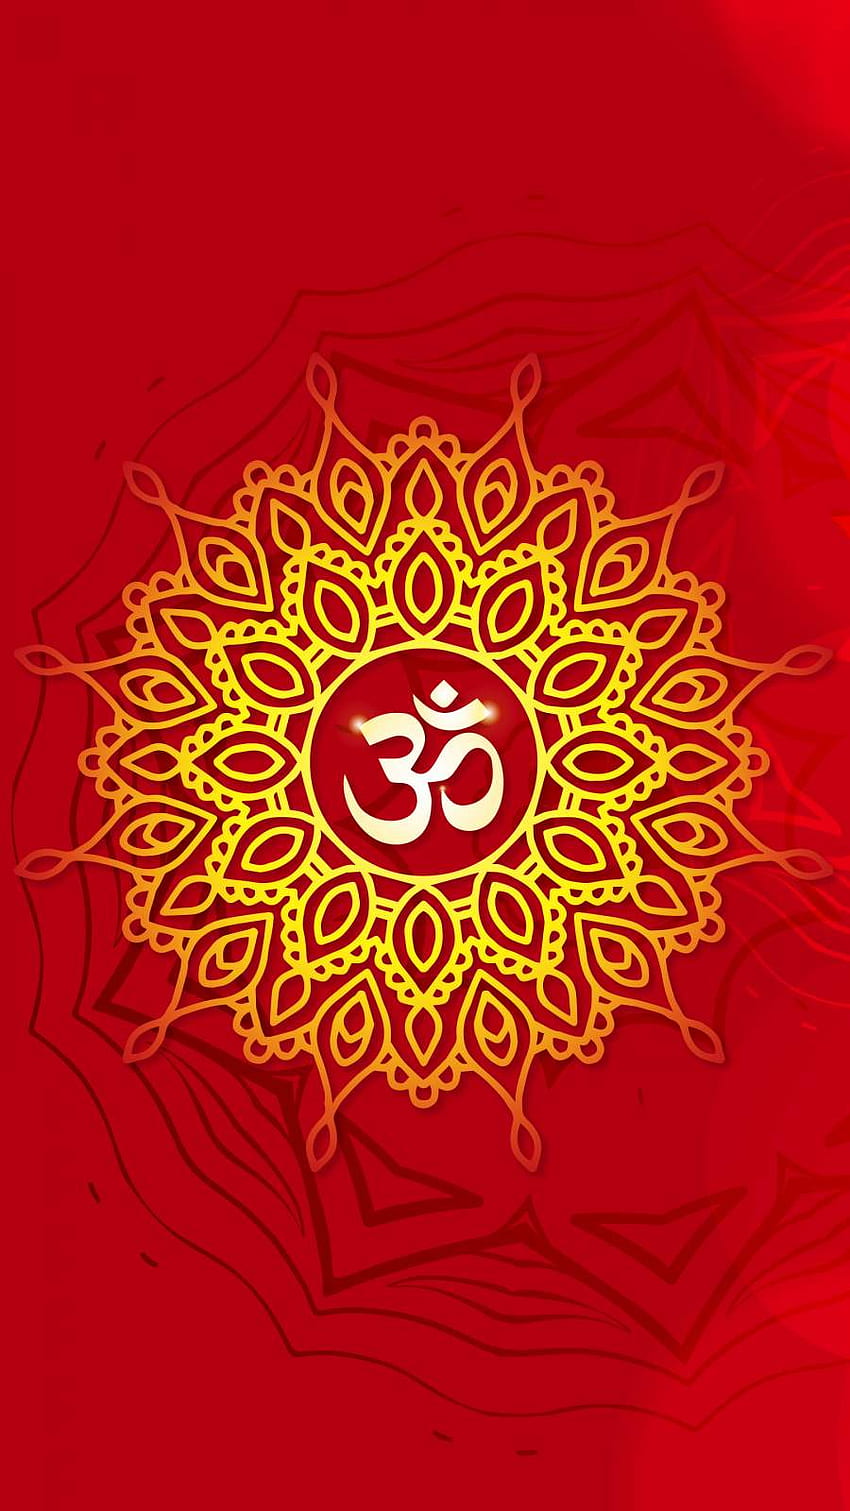 Hinduistisches spirituelles IPhone - IPhone : iPhone HD-Handy-Hintergrundbild